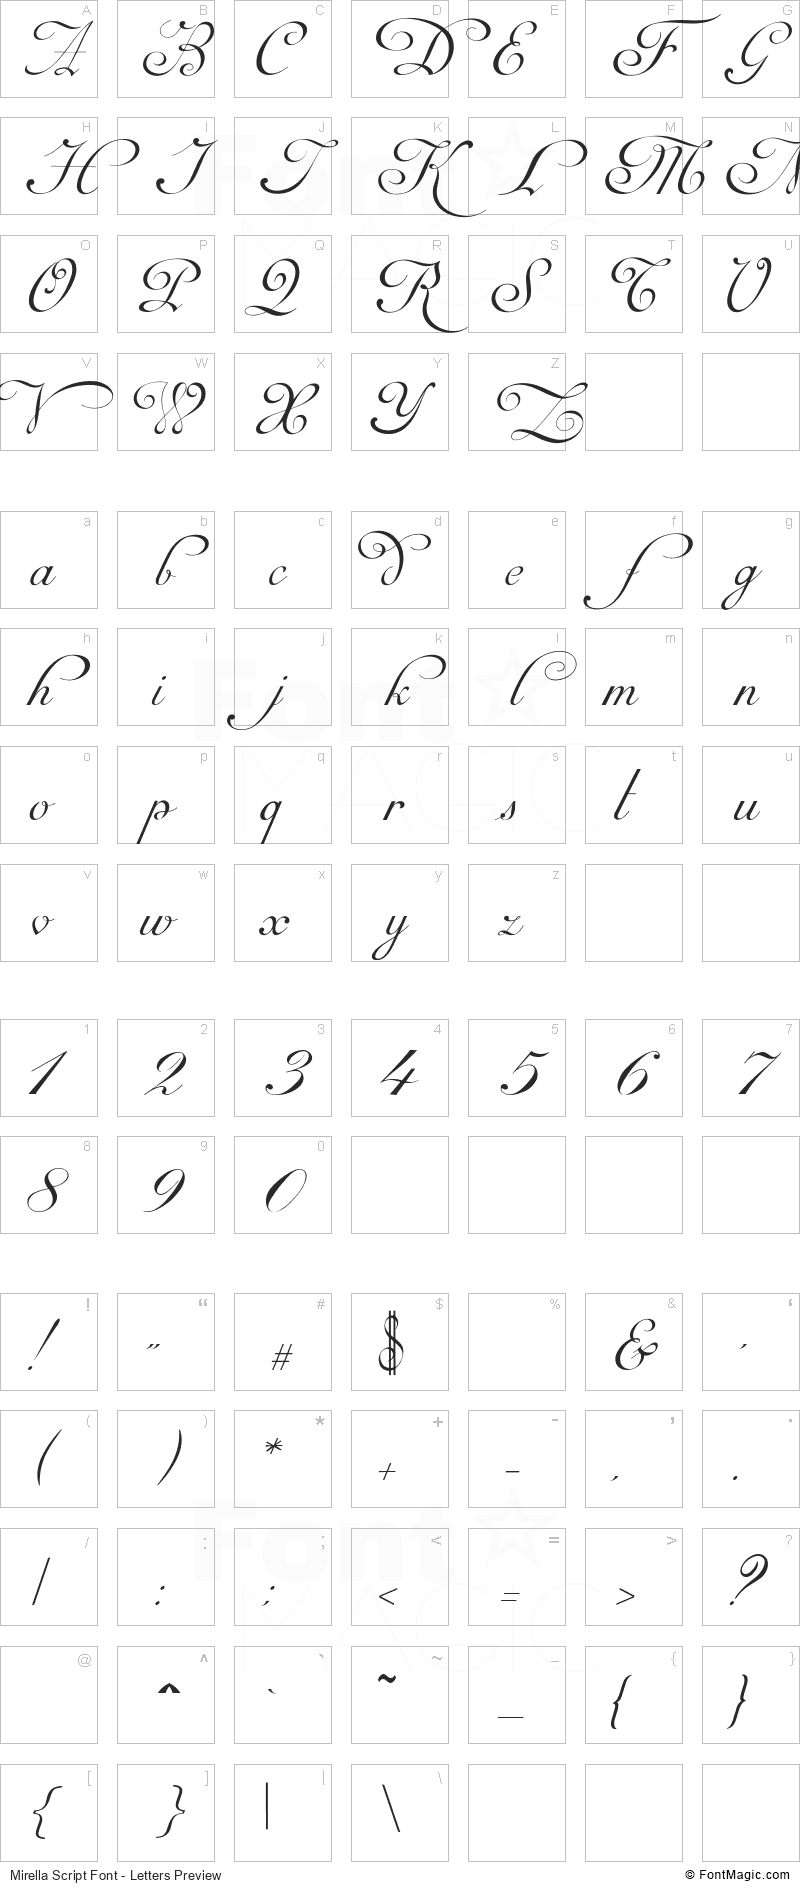 Mirella Script Font - All Latters Preview Chart